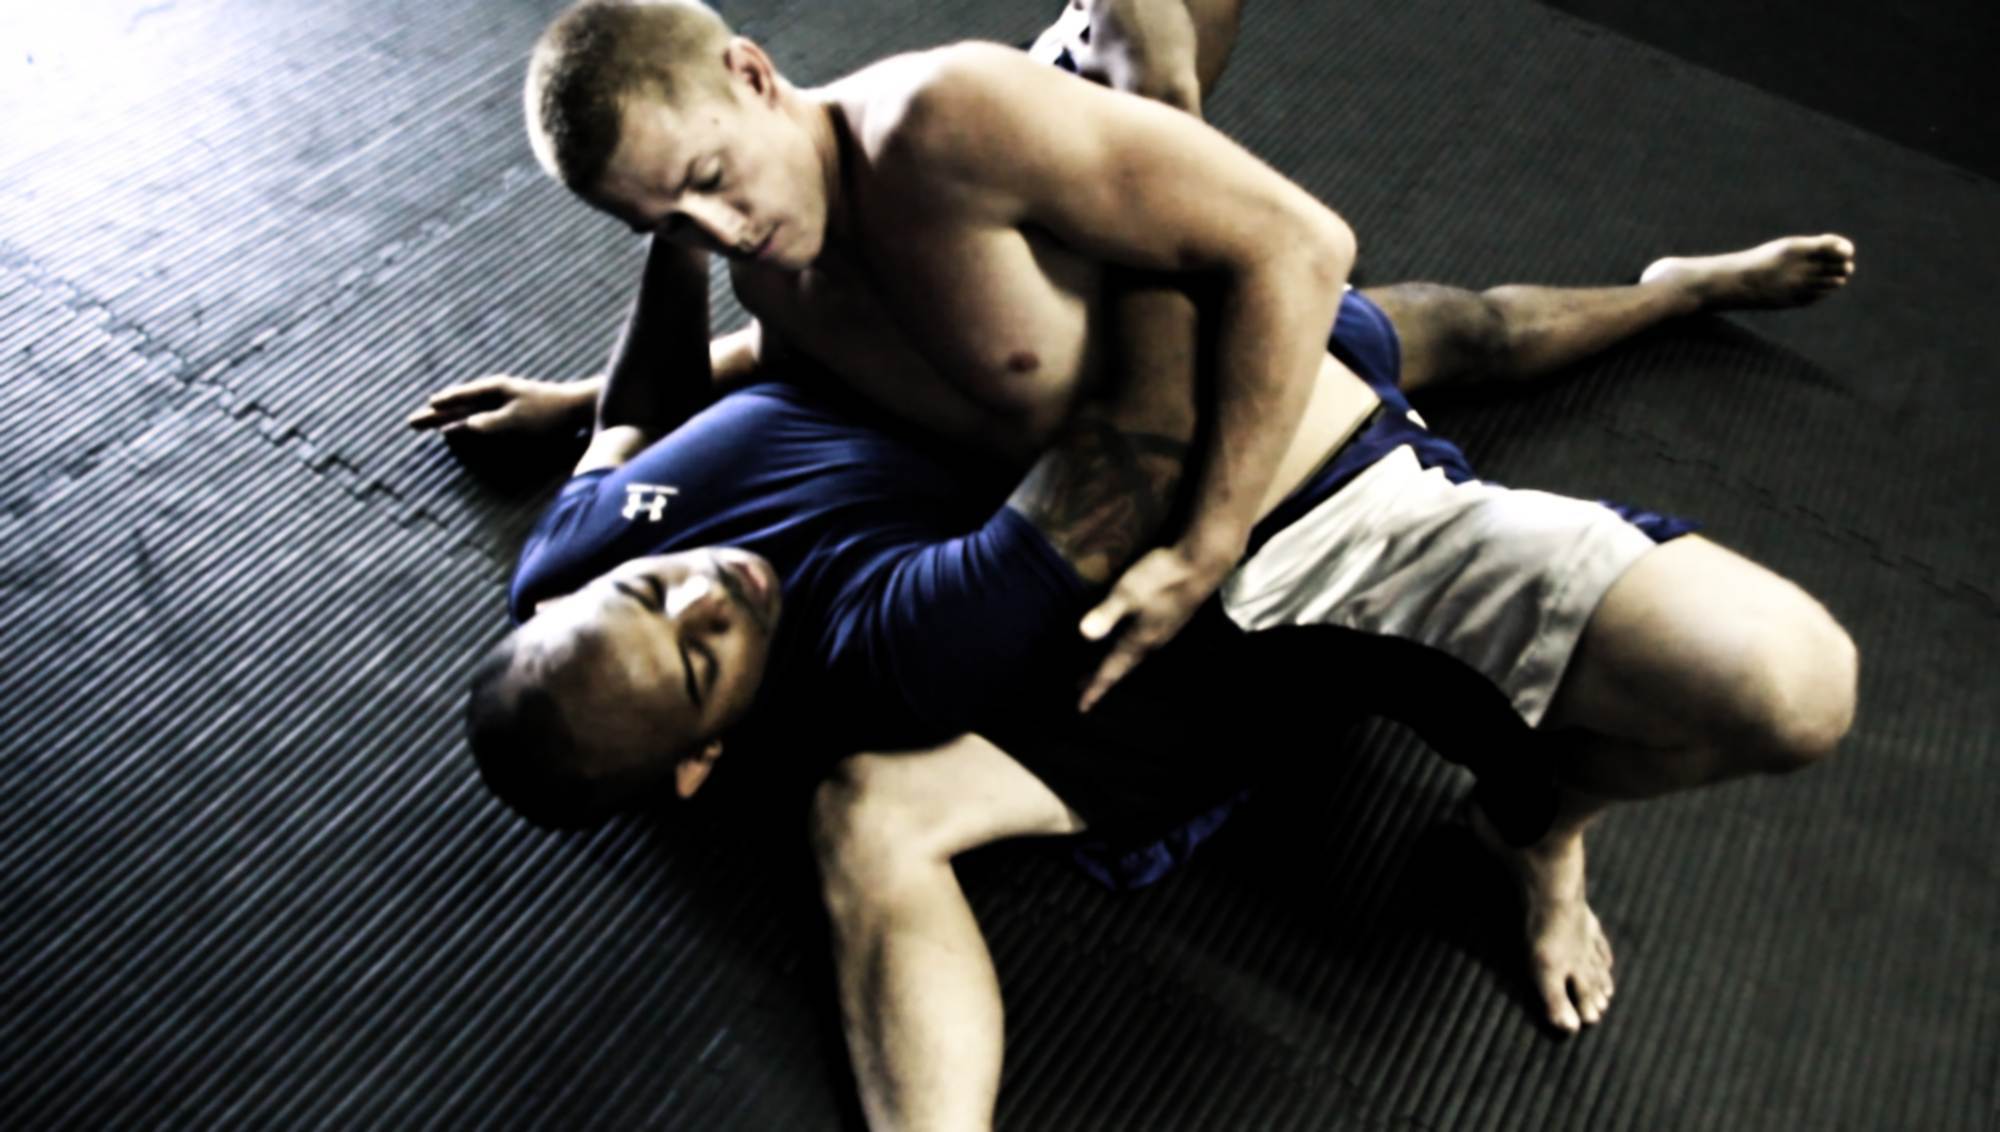 Jiu Jitsu Technique of the week w/ Bryce Shepard